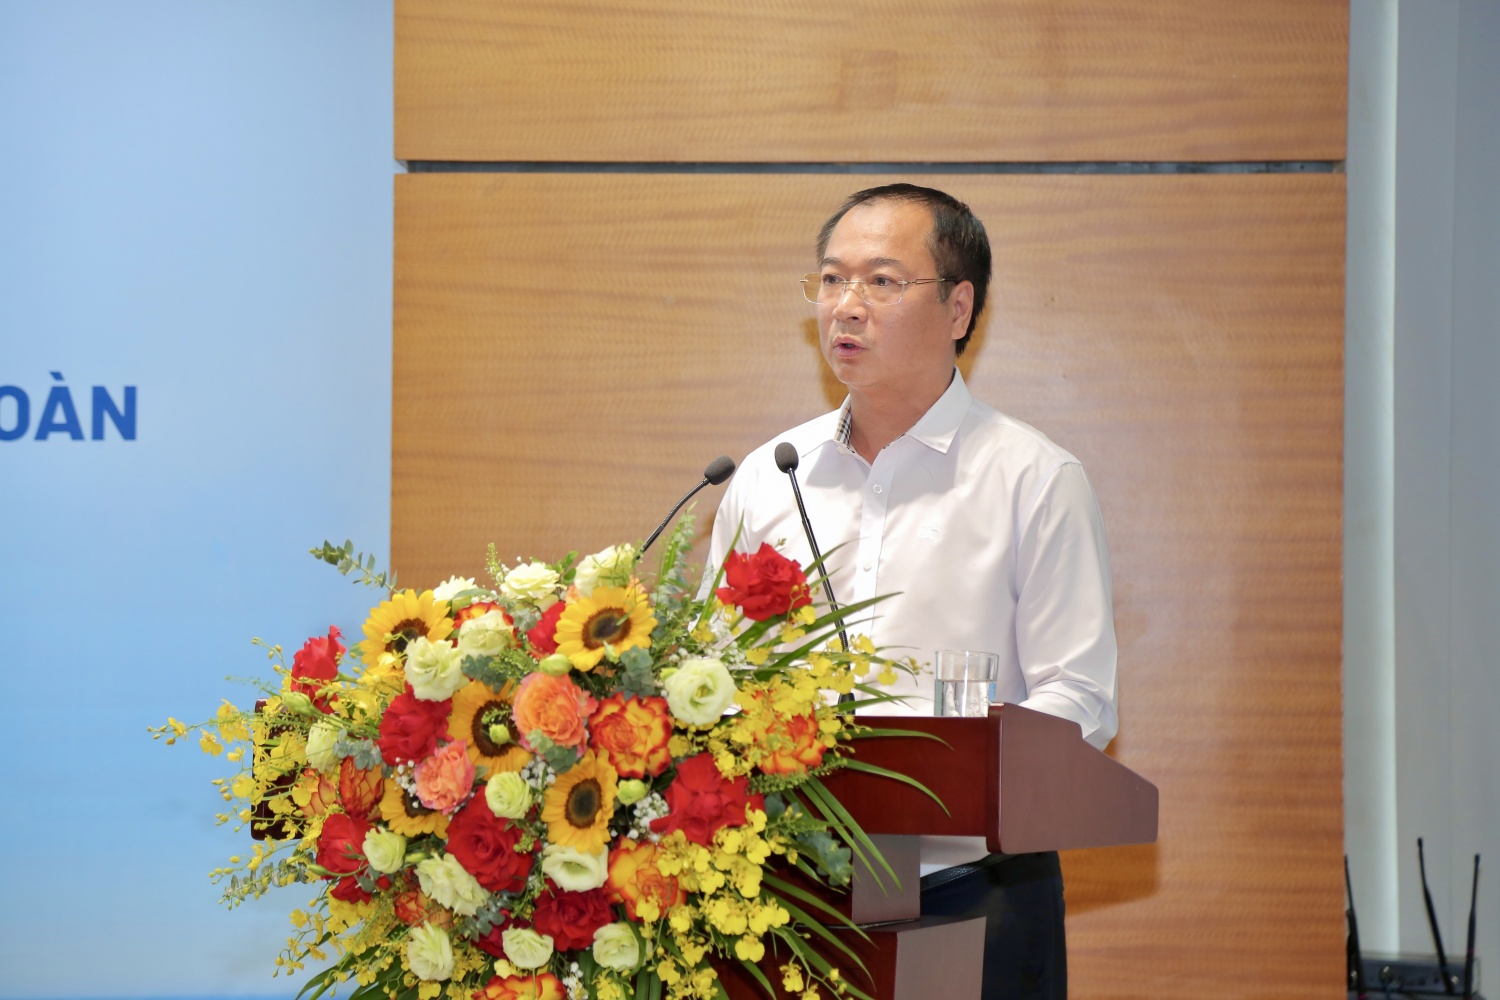 ông Nguyễn Mạnh Tưởng – Trưởng Ban QLDA ĐLDK Sông Hậu 1 trình bày tham luận về giải pháp nâng cao văn hóa phối hợp trong thực thi nhiệm vụ